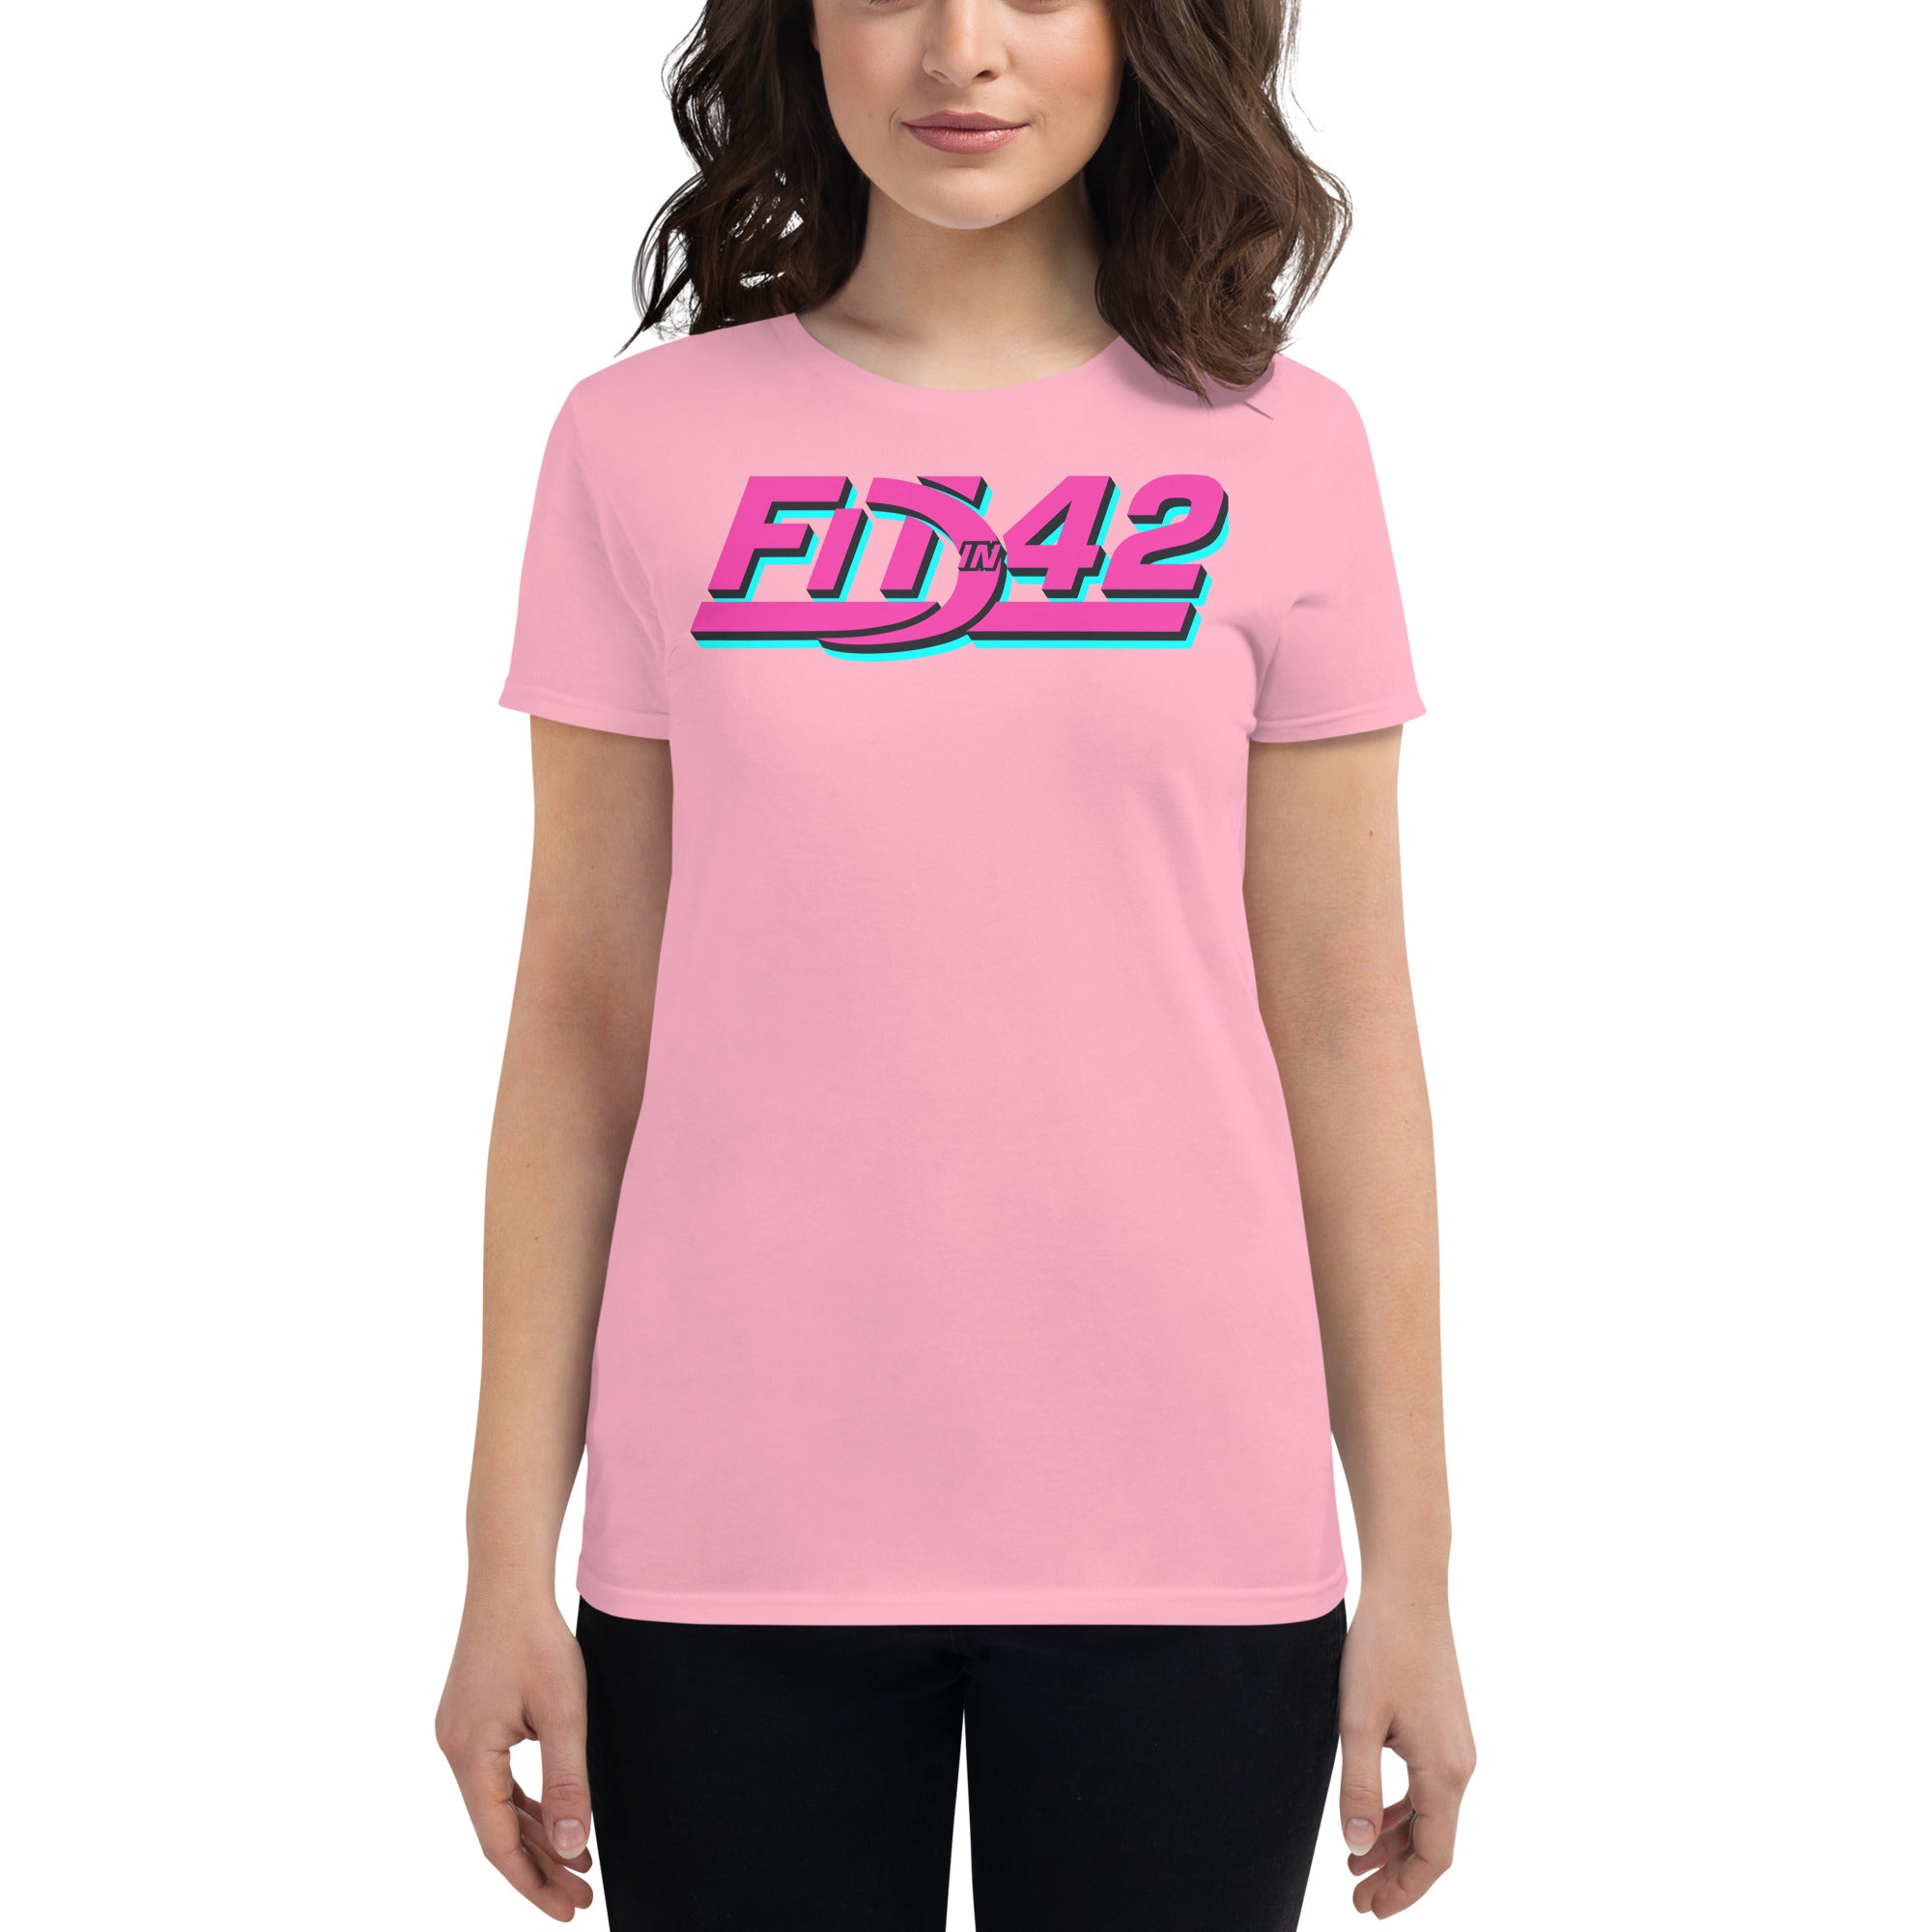 Hot Pink Women's short sleeve t-shirt